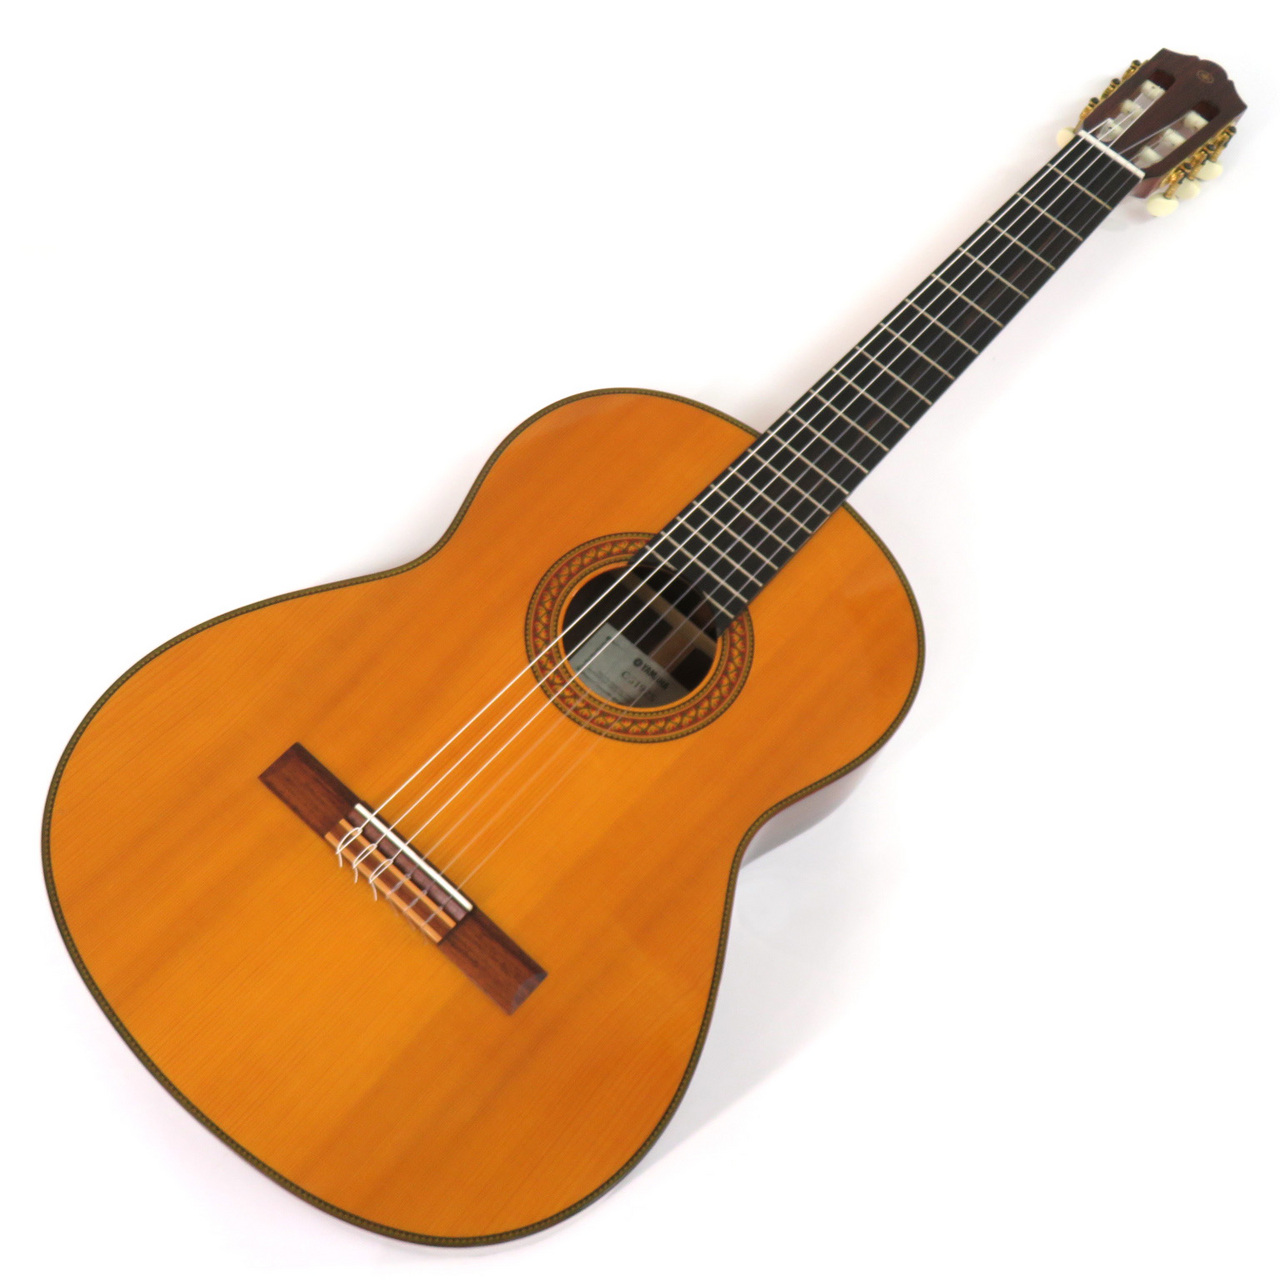 絶賛商品YAMAHA　クラシックギター　CG-192S　中古 本体